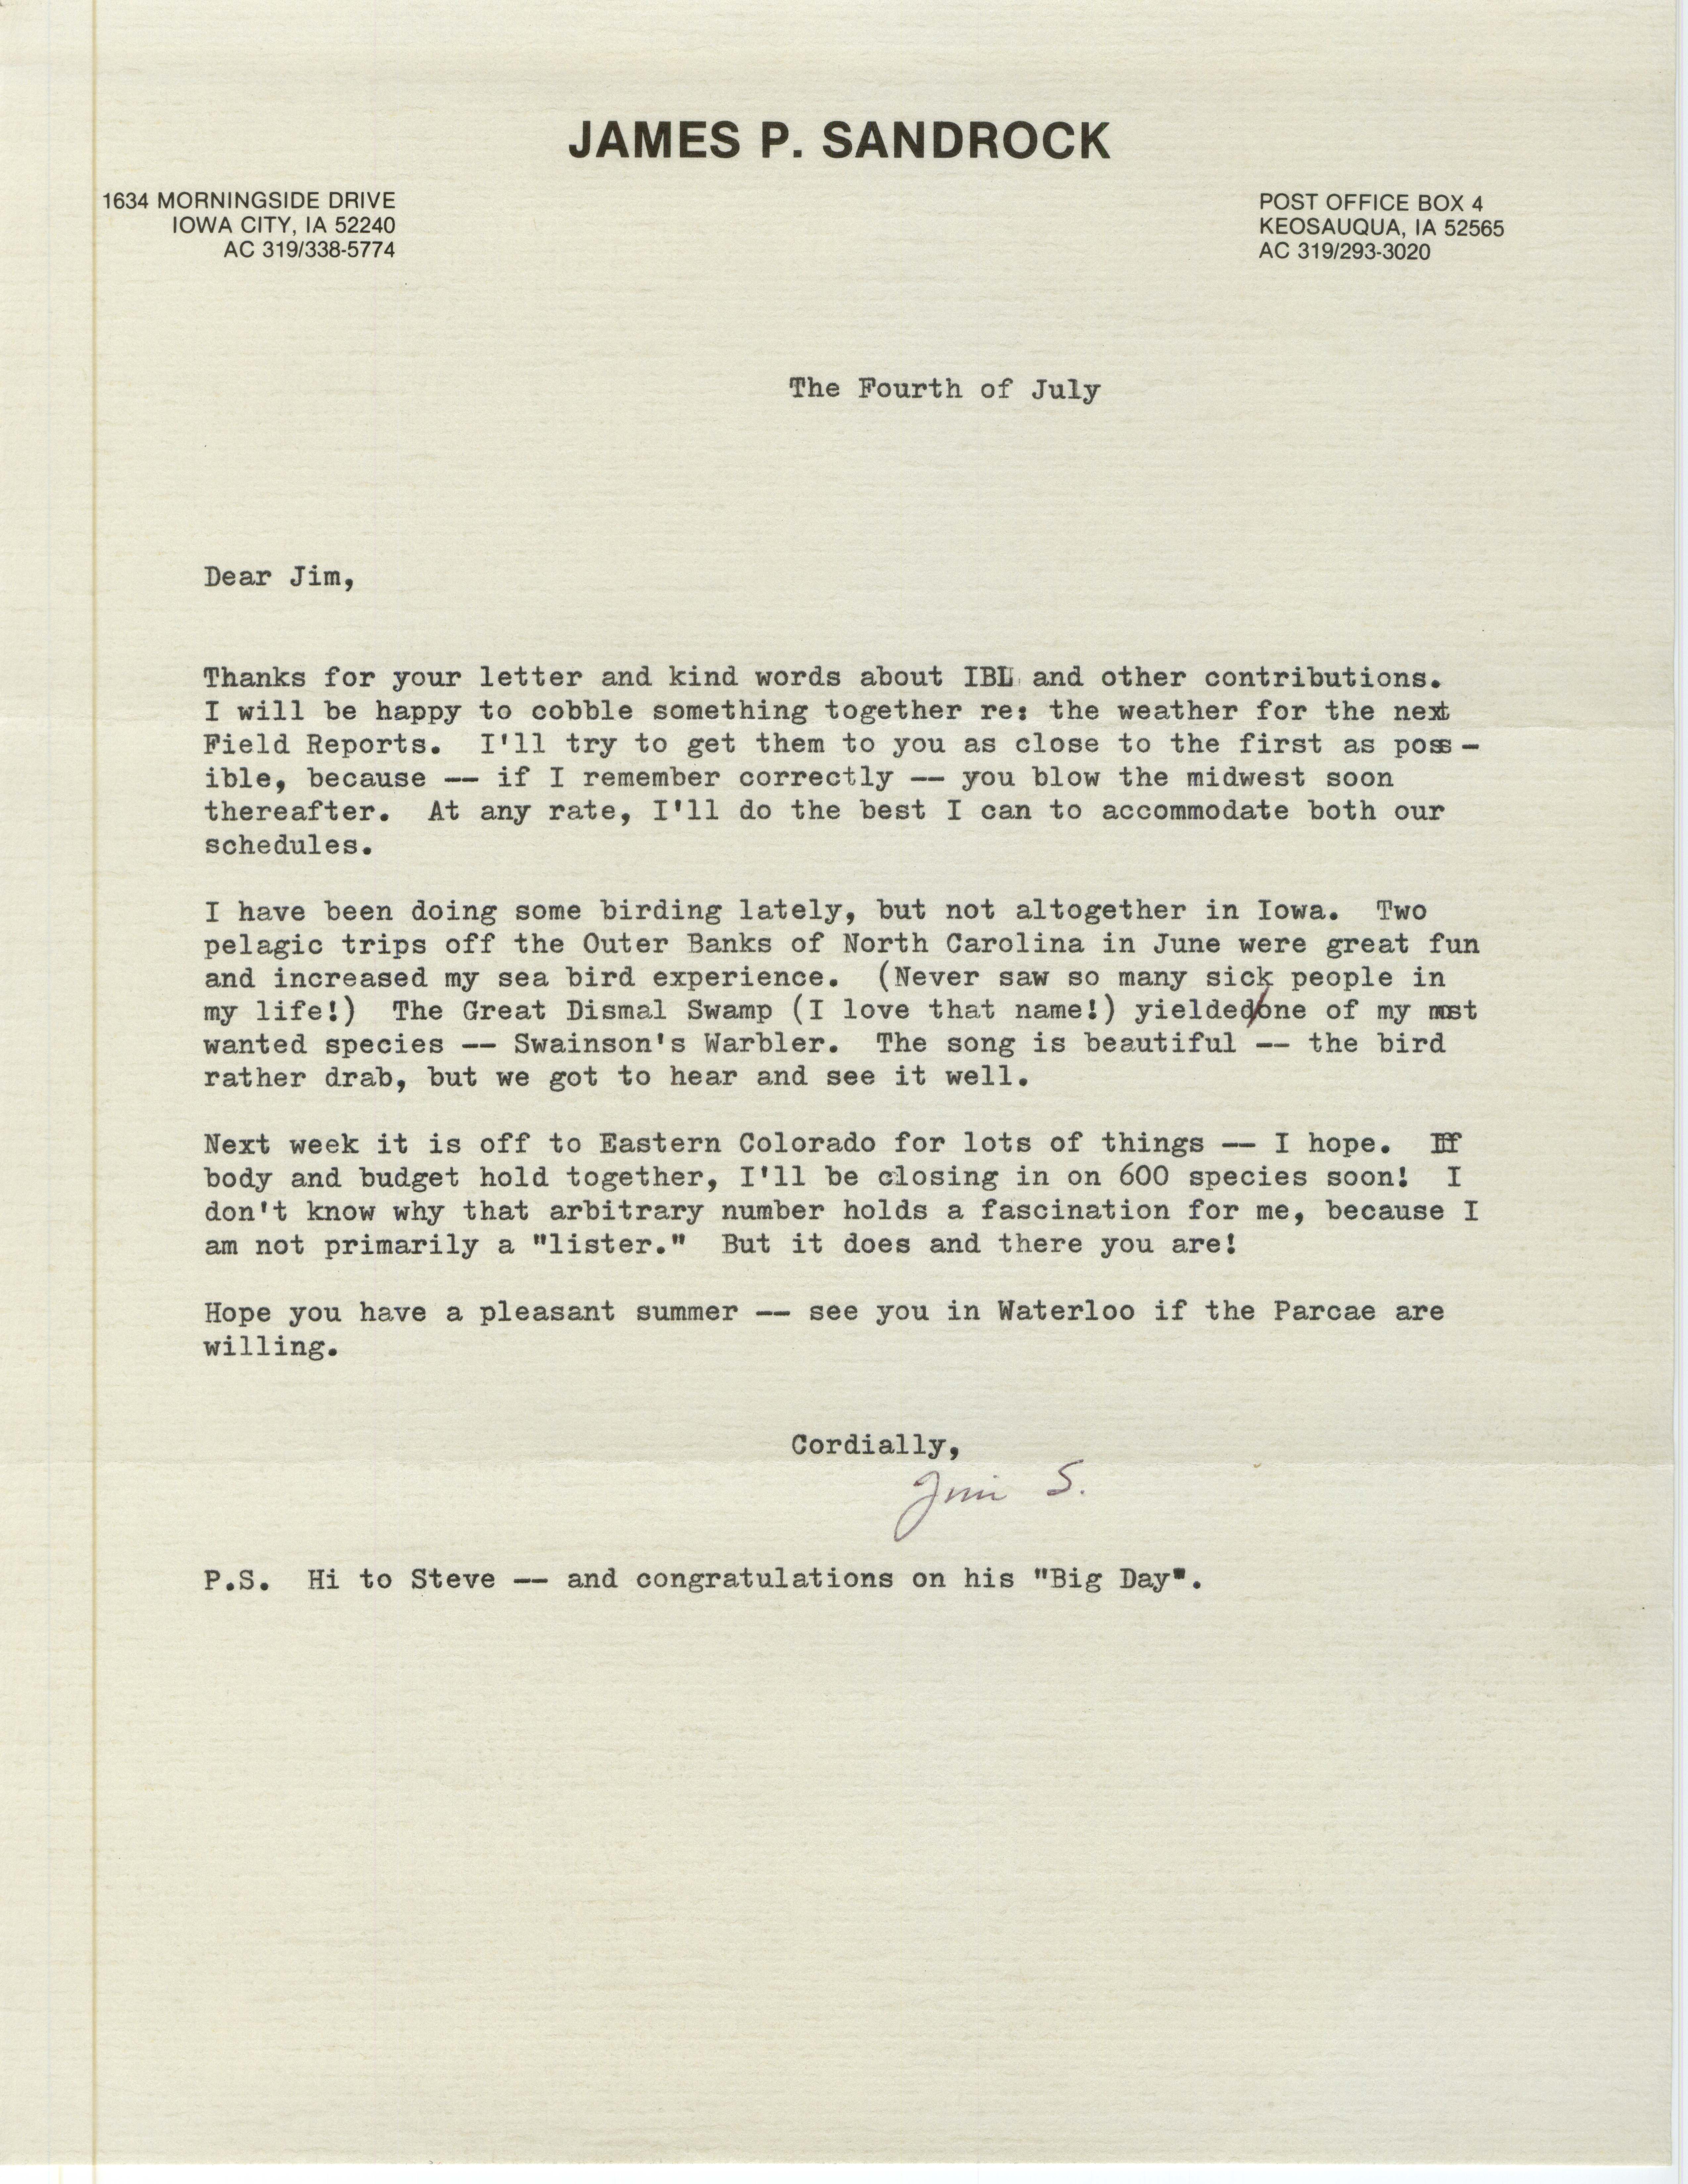 James P. Sandrock letter to James J. Dinsmore regarding a weather report, July 4, 1986